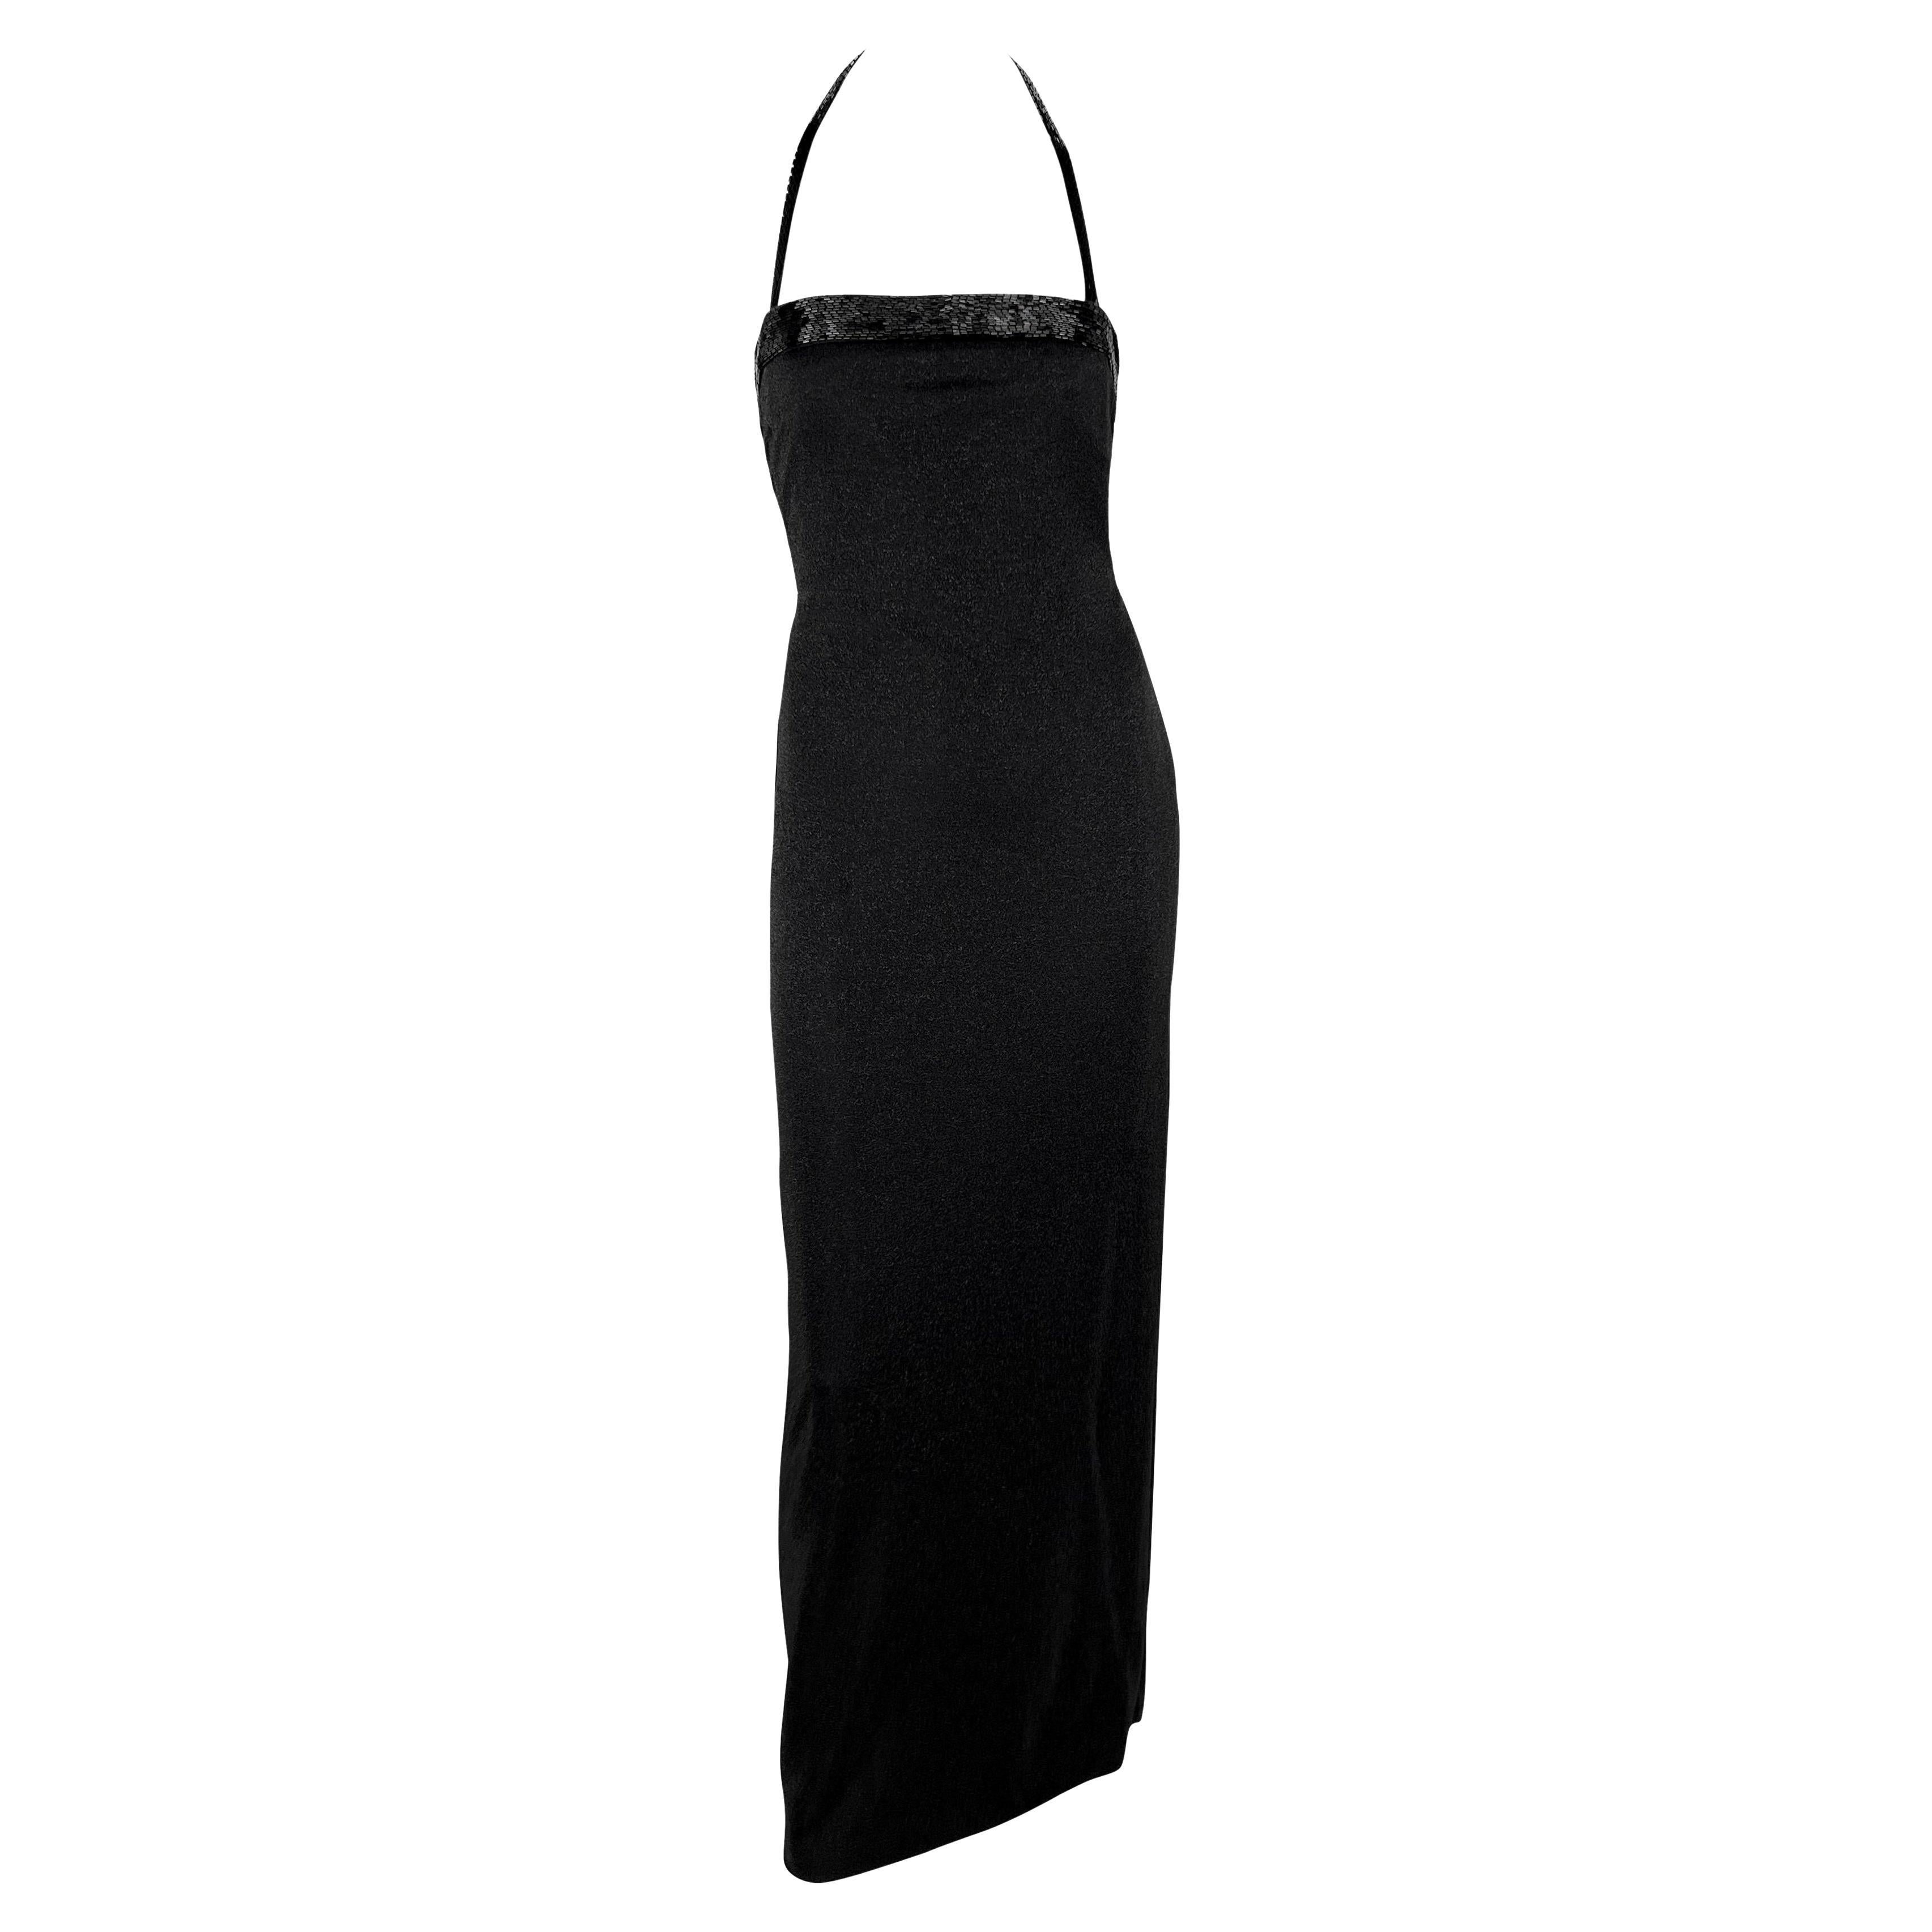 F/W 1997 Gianni Versace Runway Beaded Black Lurex Metallic Halter Neck Gown For Sale